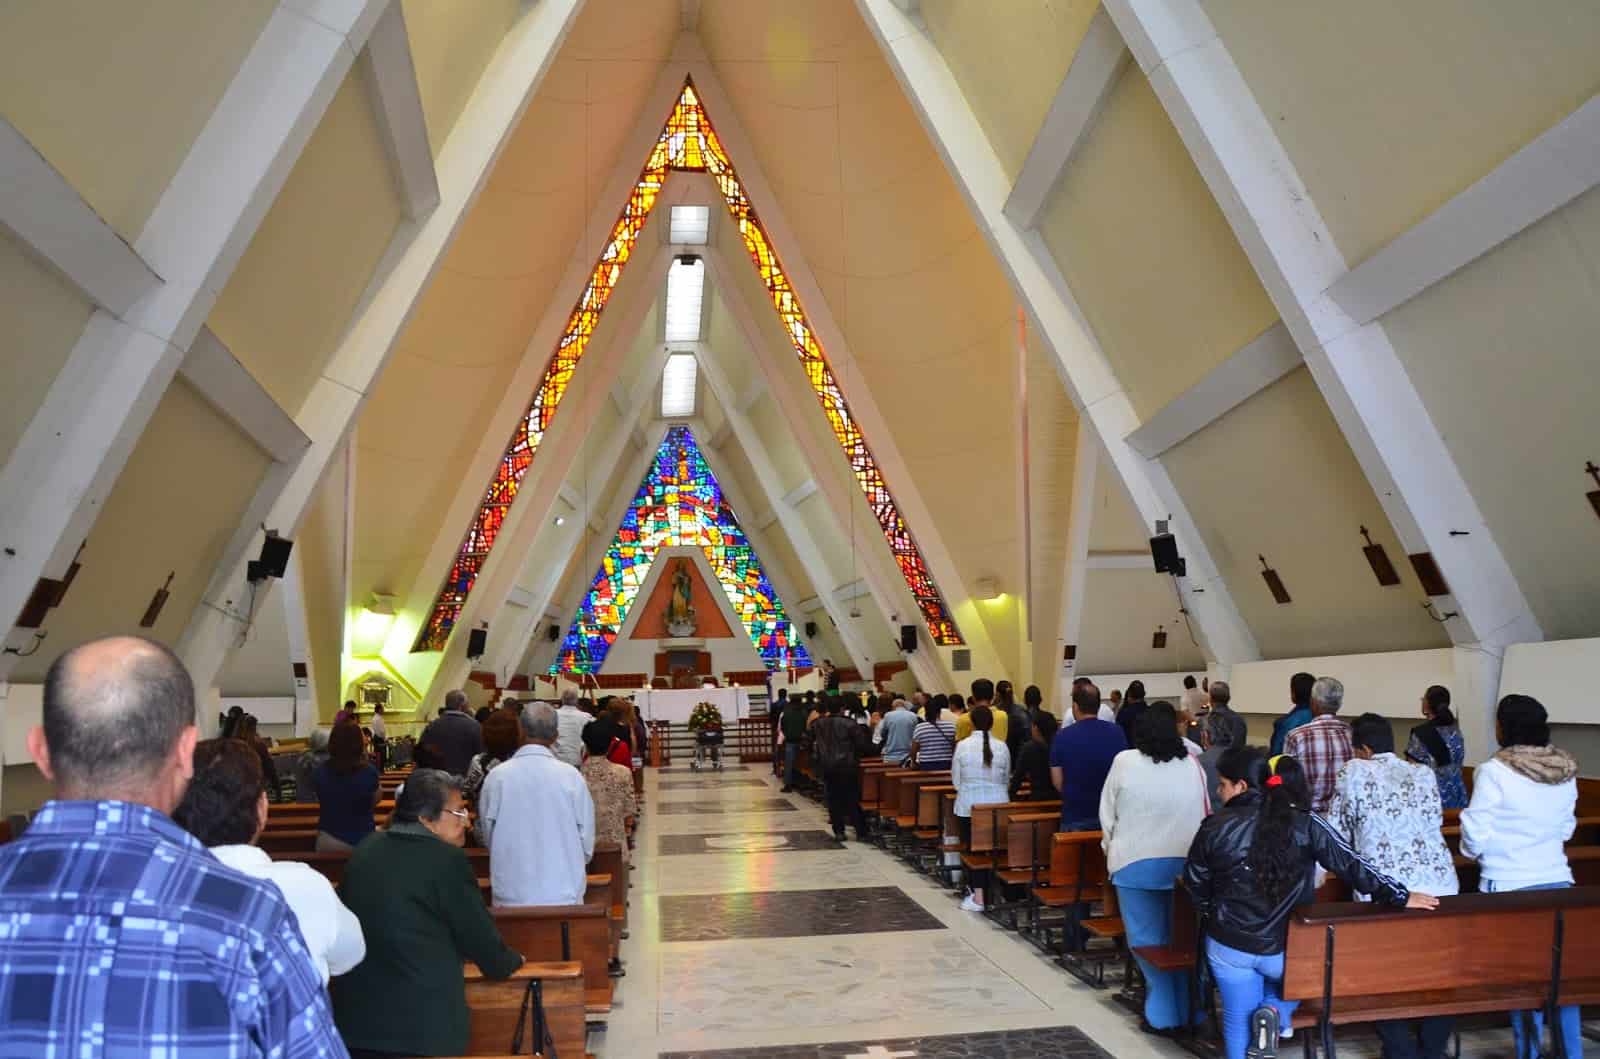 Catedral de la Inmaculada Concepción in Armenia, Quindío, Colombia